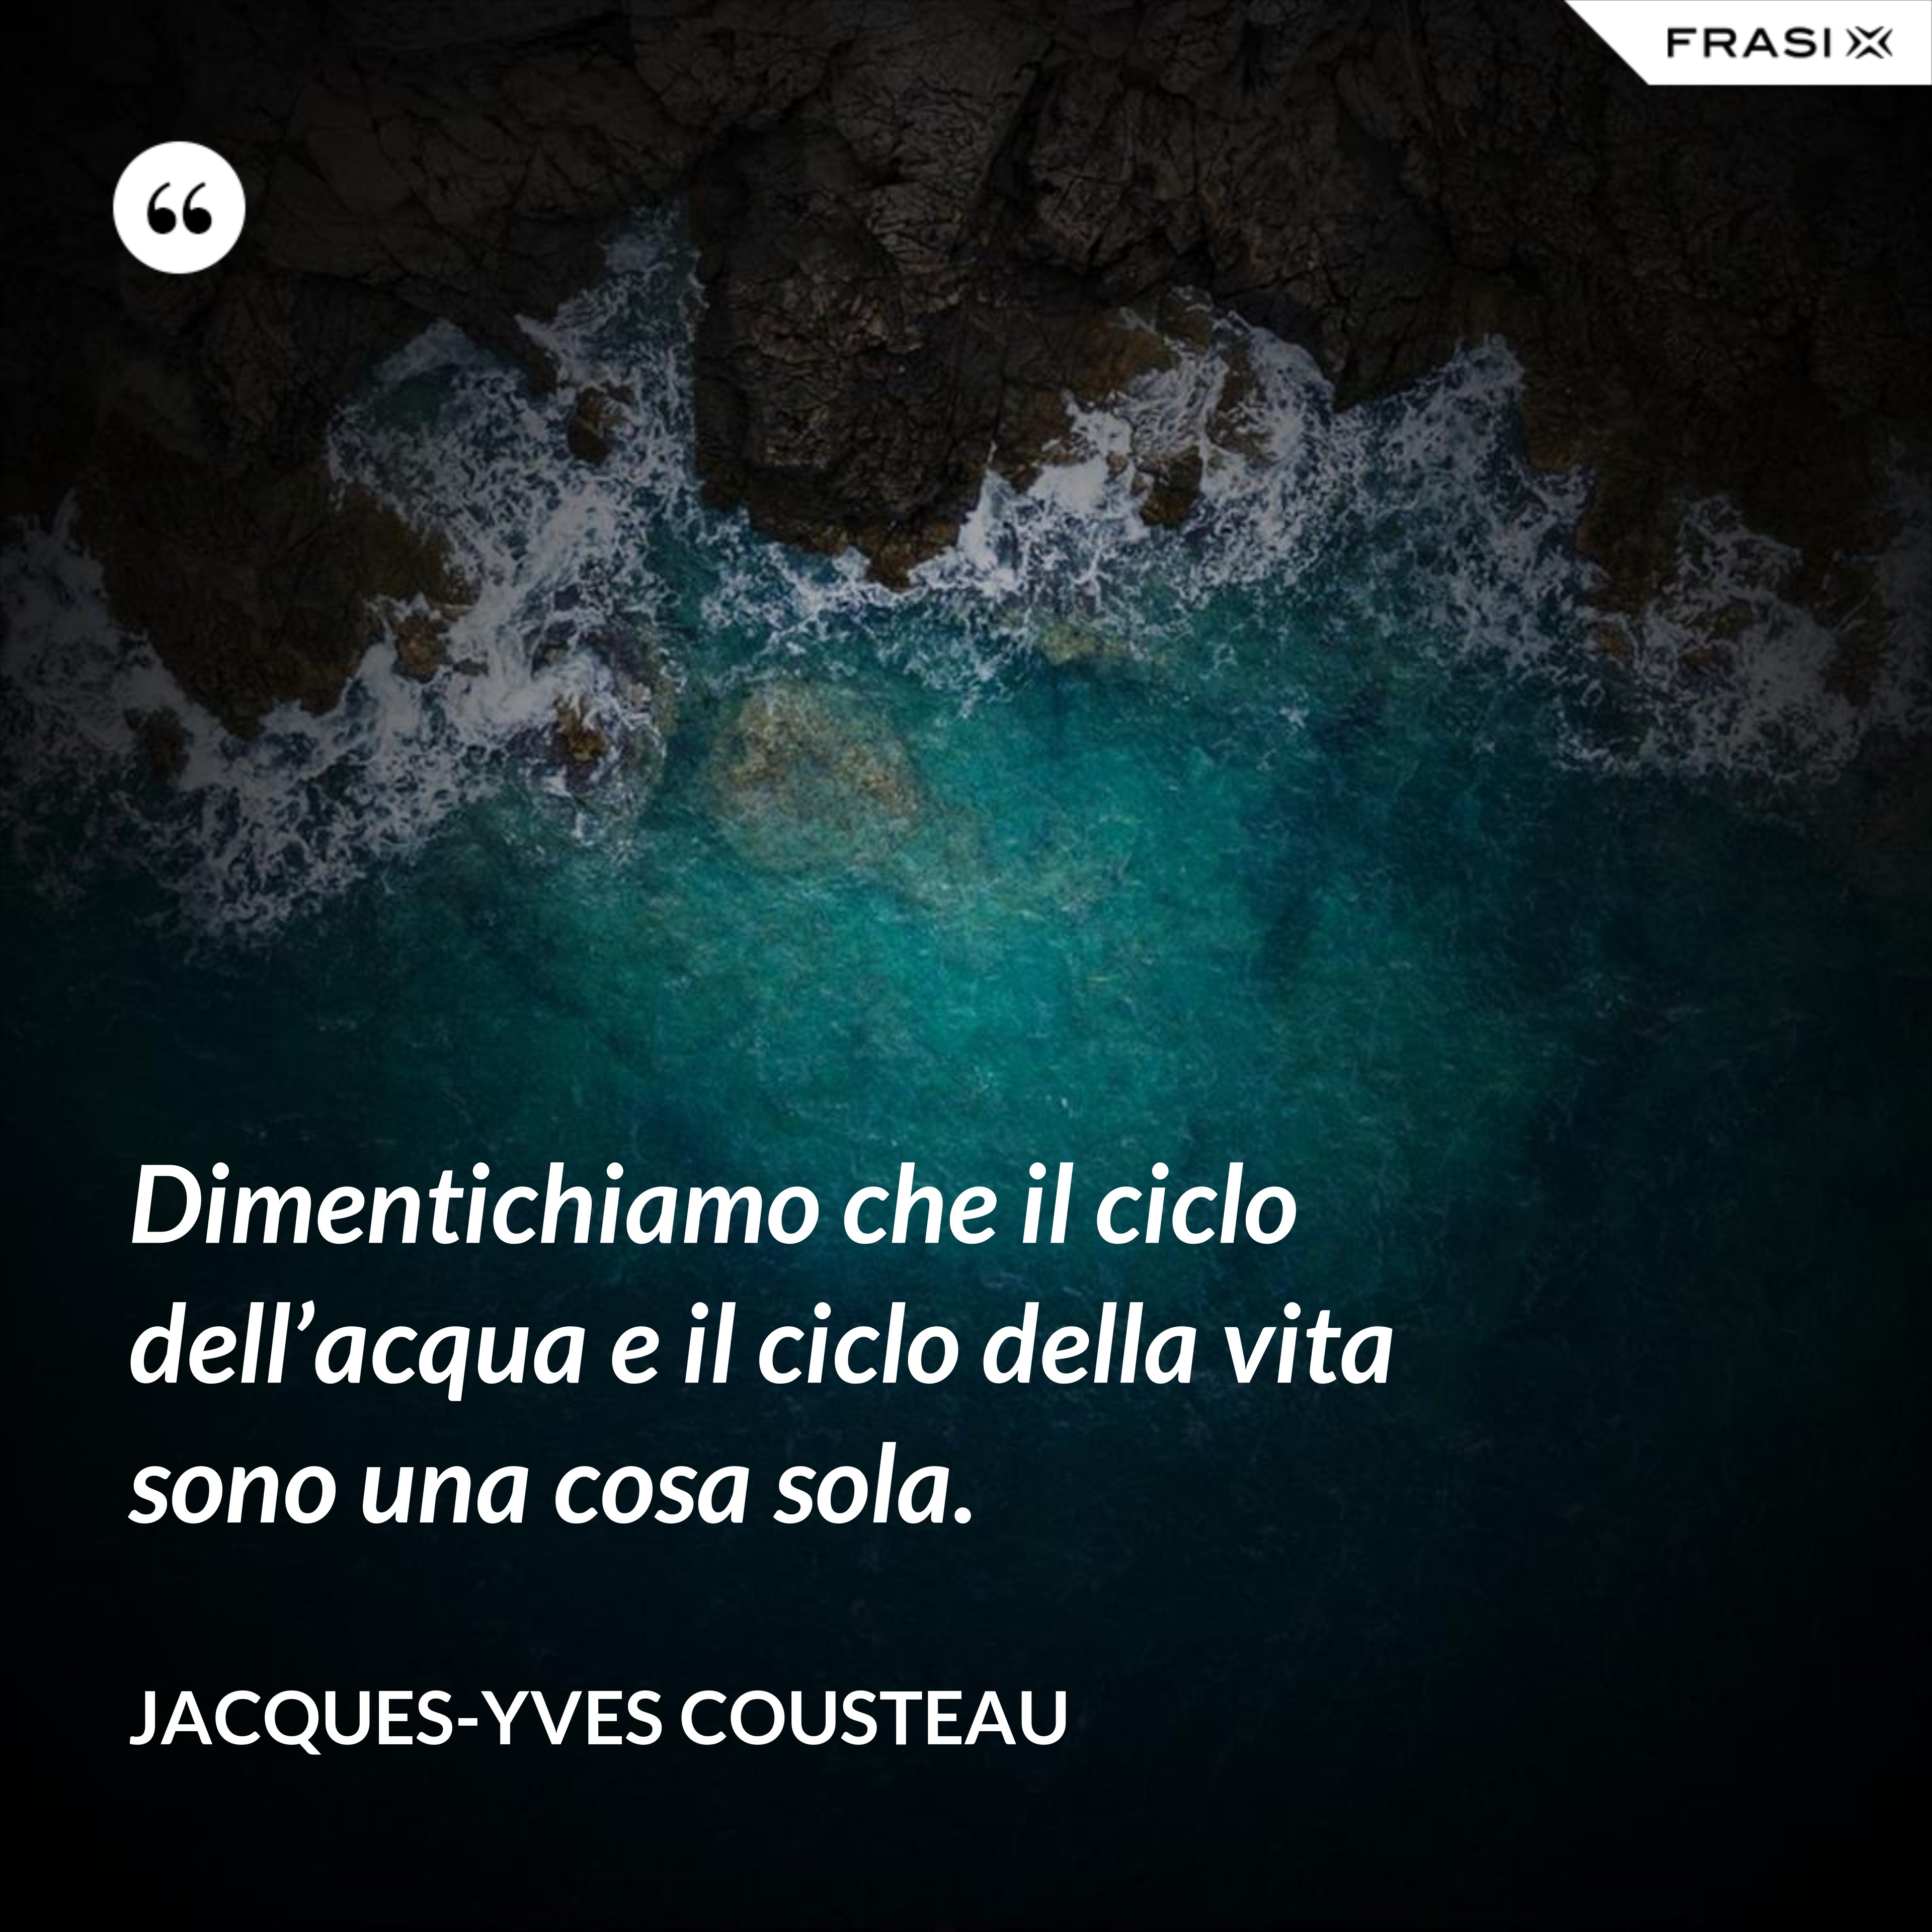 Dimentichiamo che il ciclo dell’acqua e il ciclo della vita sono una cosa sola. - Jacques-Yves Cousteau